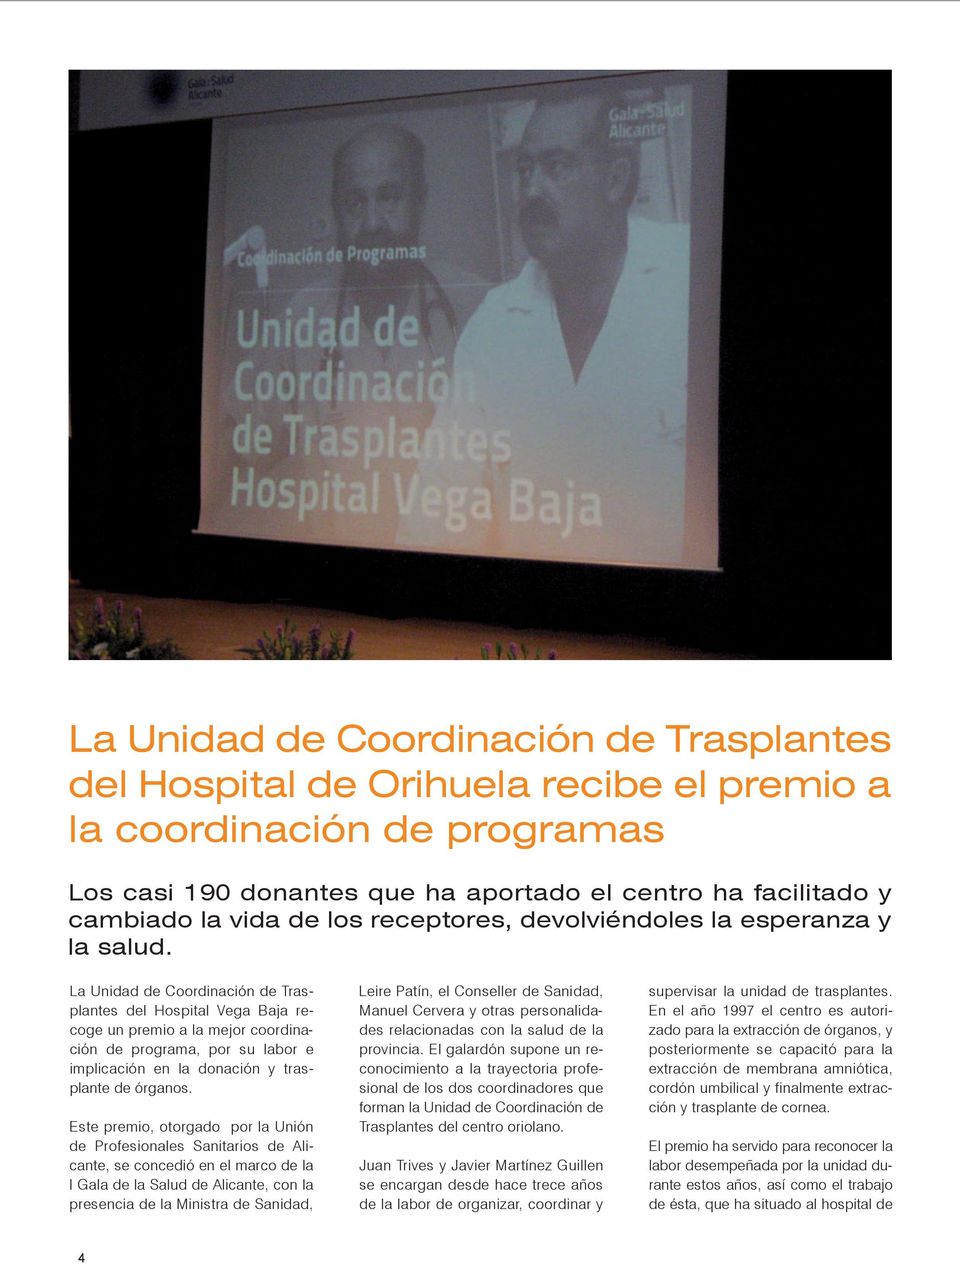 La Unidad de Coordinación de Trasplantes del Hospital Vega Baja recoge un premio a la mejor coordinación de programa, por su labor e implicación en la donación y trasplante de órganos.